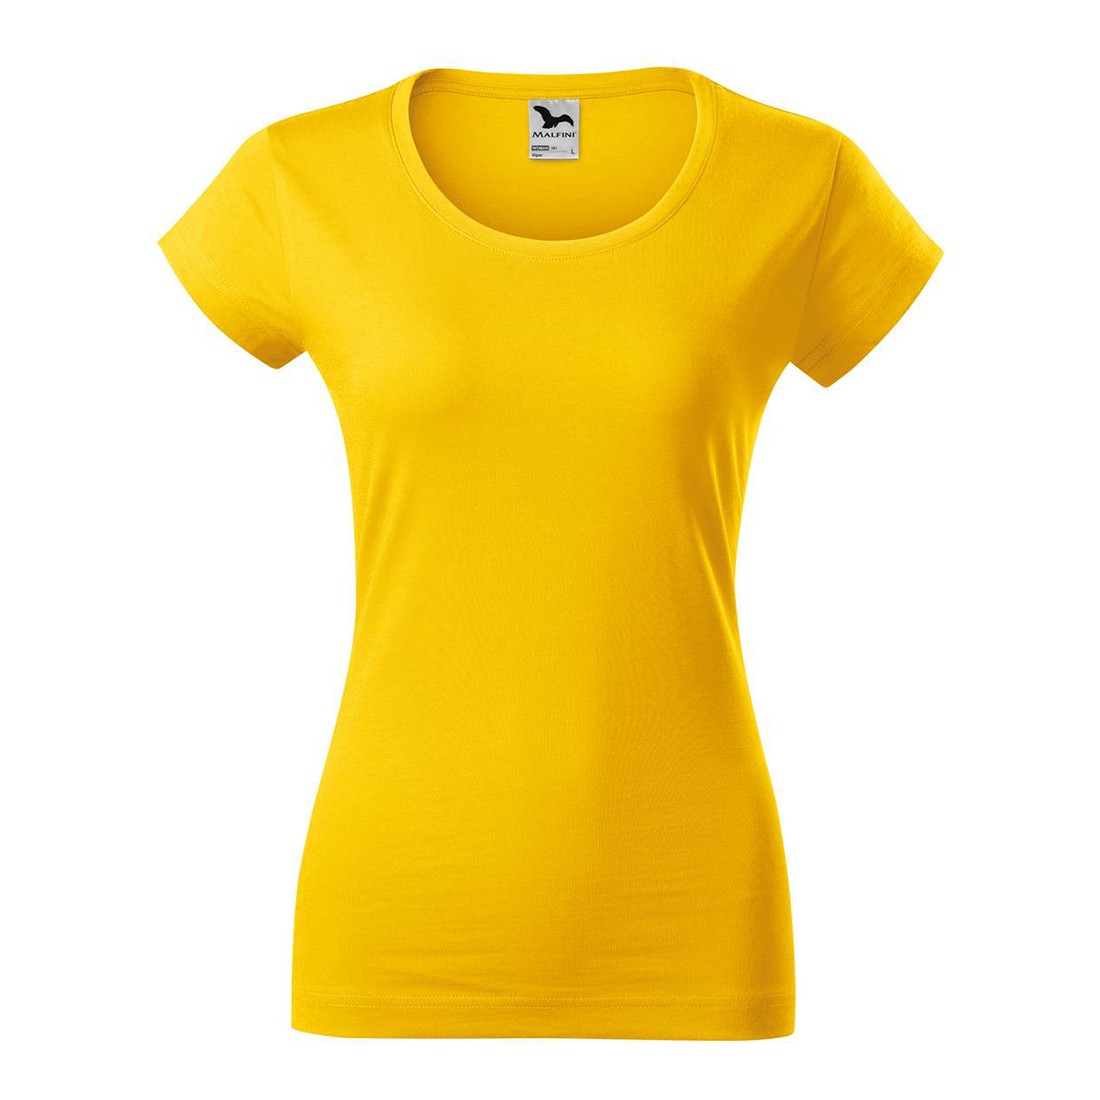 Camiseta Mujer VIPER - Ropa de protección